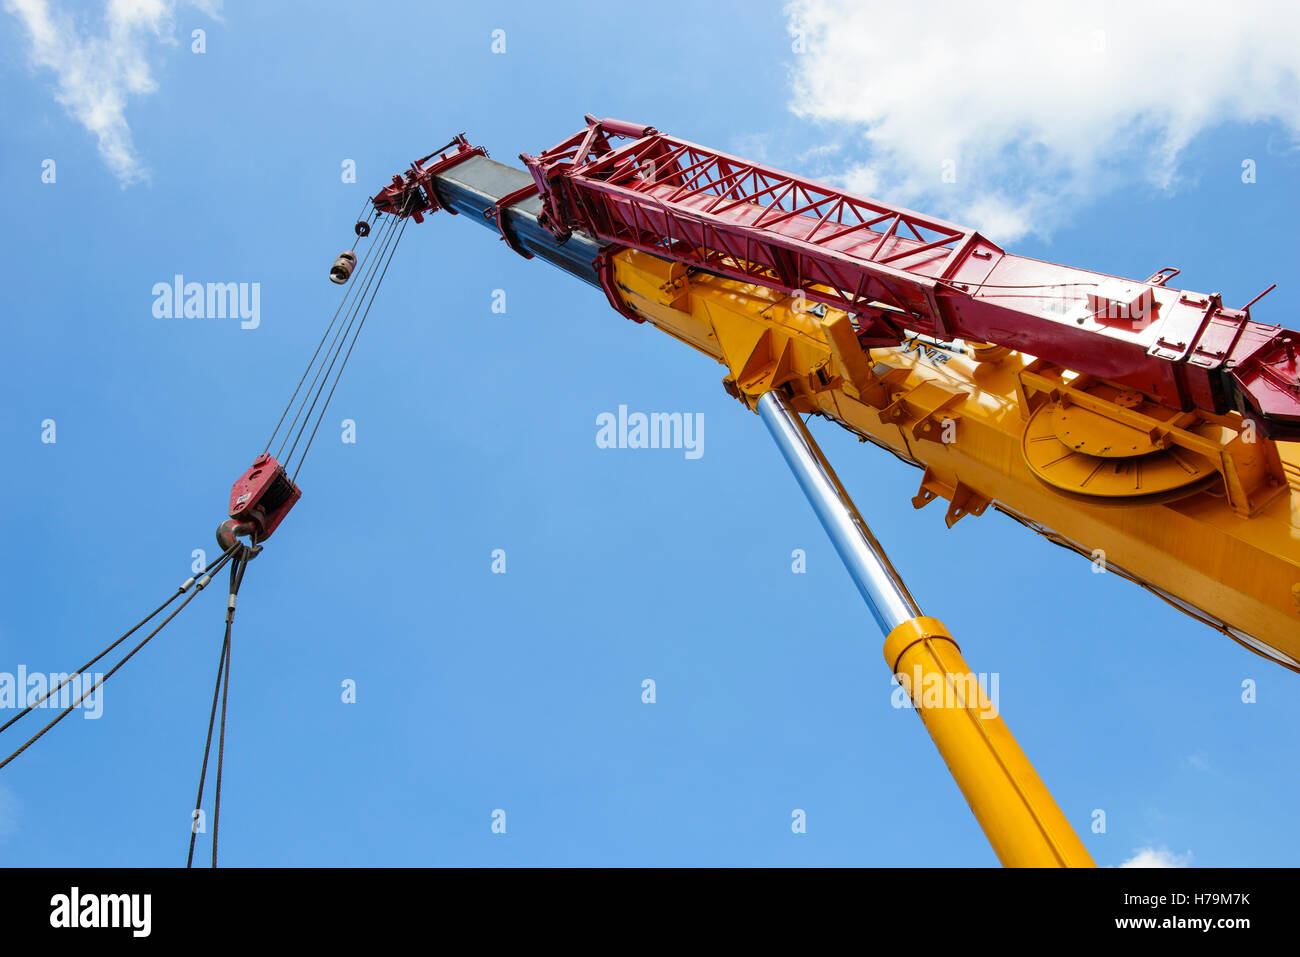 Heavy hydraulic crane Stock Photo